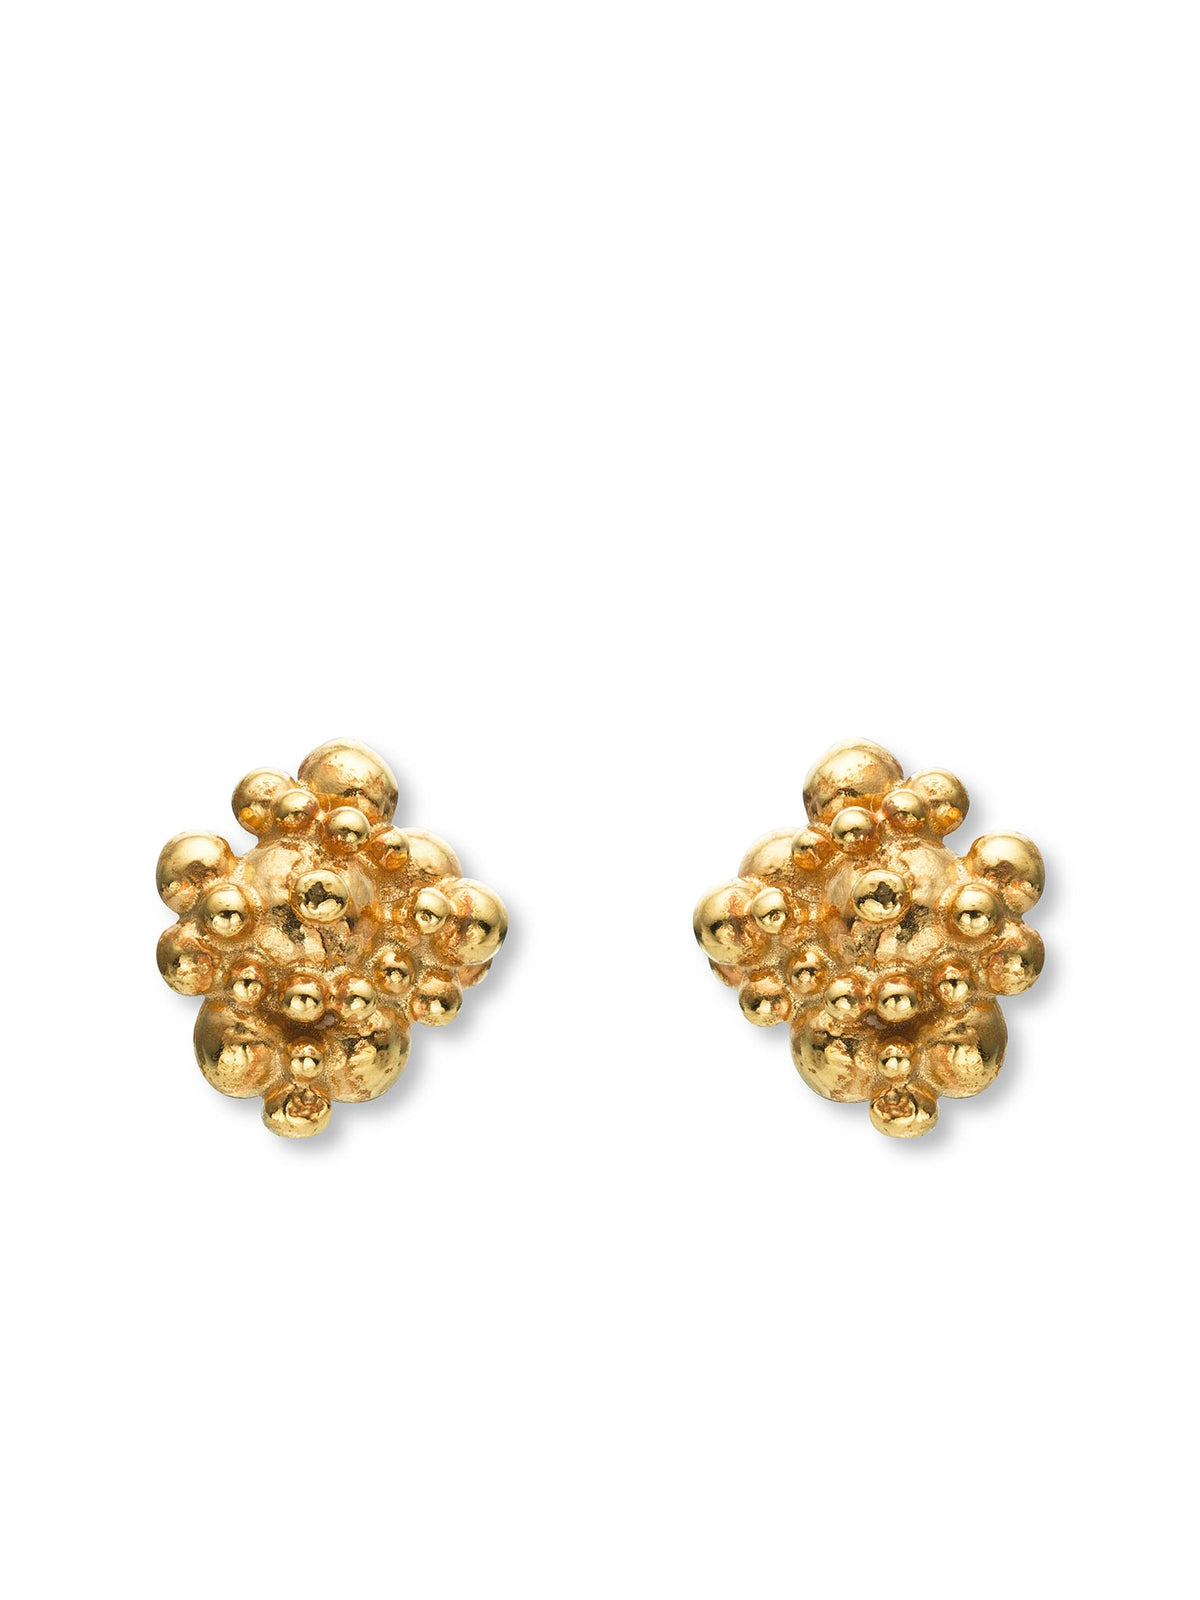 Céleste Deux Small Earrings 14ct Gold